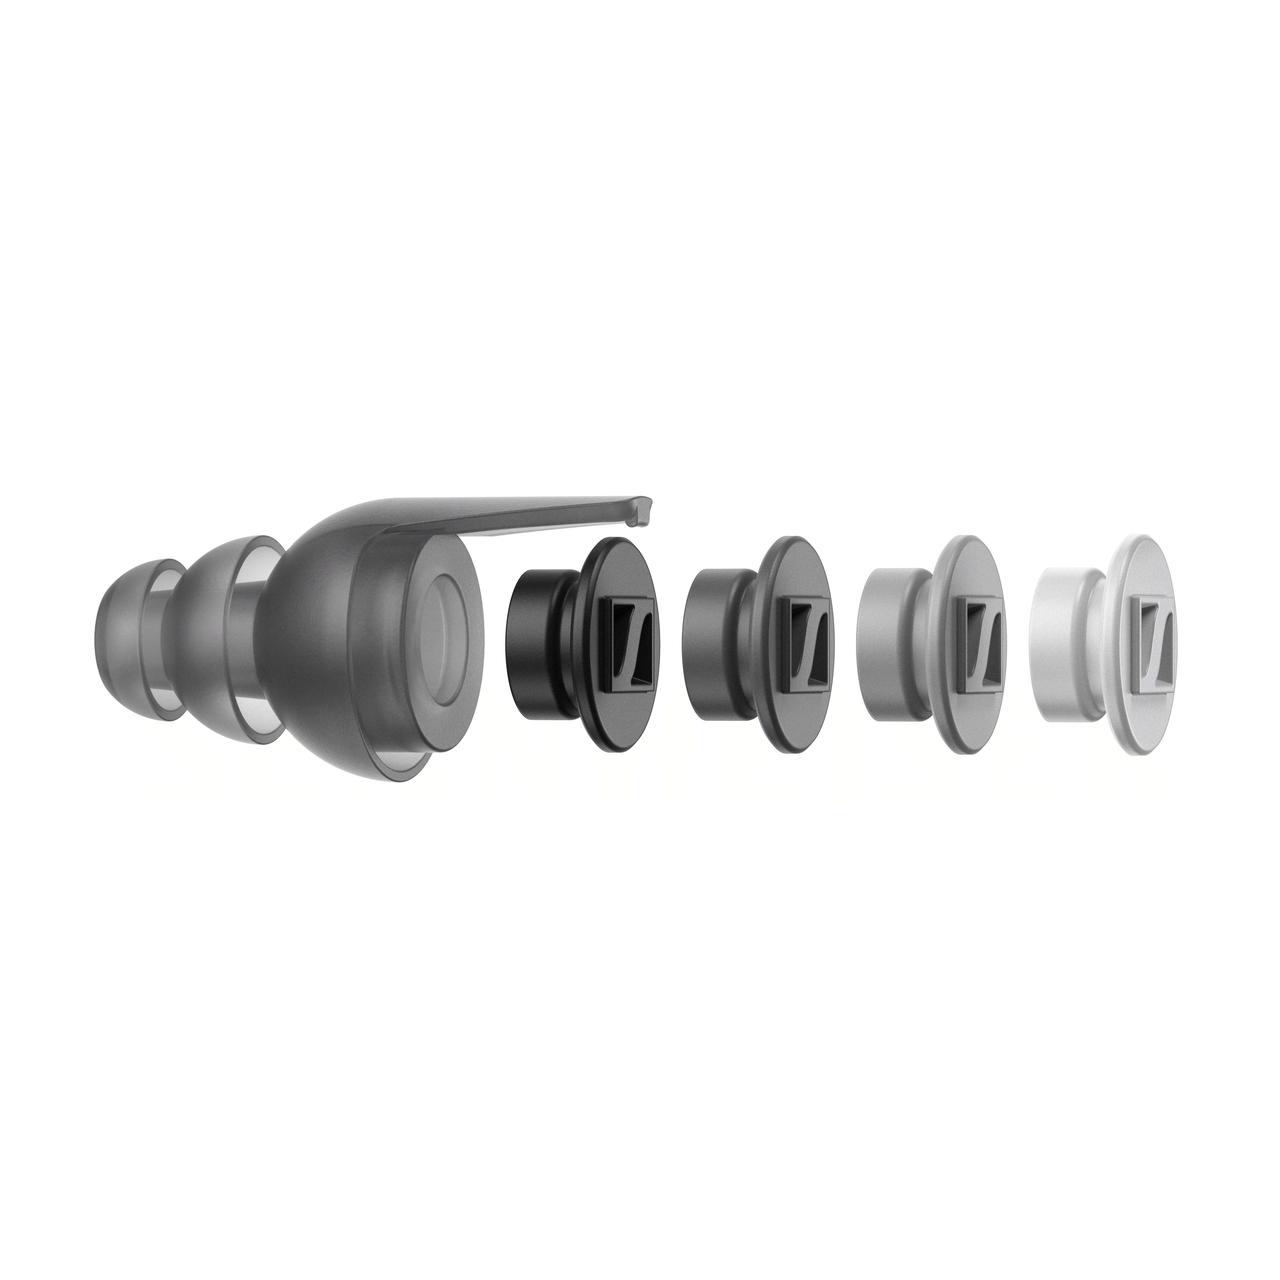 SoundProtex Plus. Tapones de protección auditiva de alta calidad, lavables y reutilizables